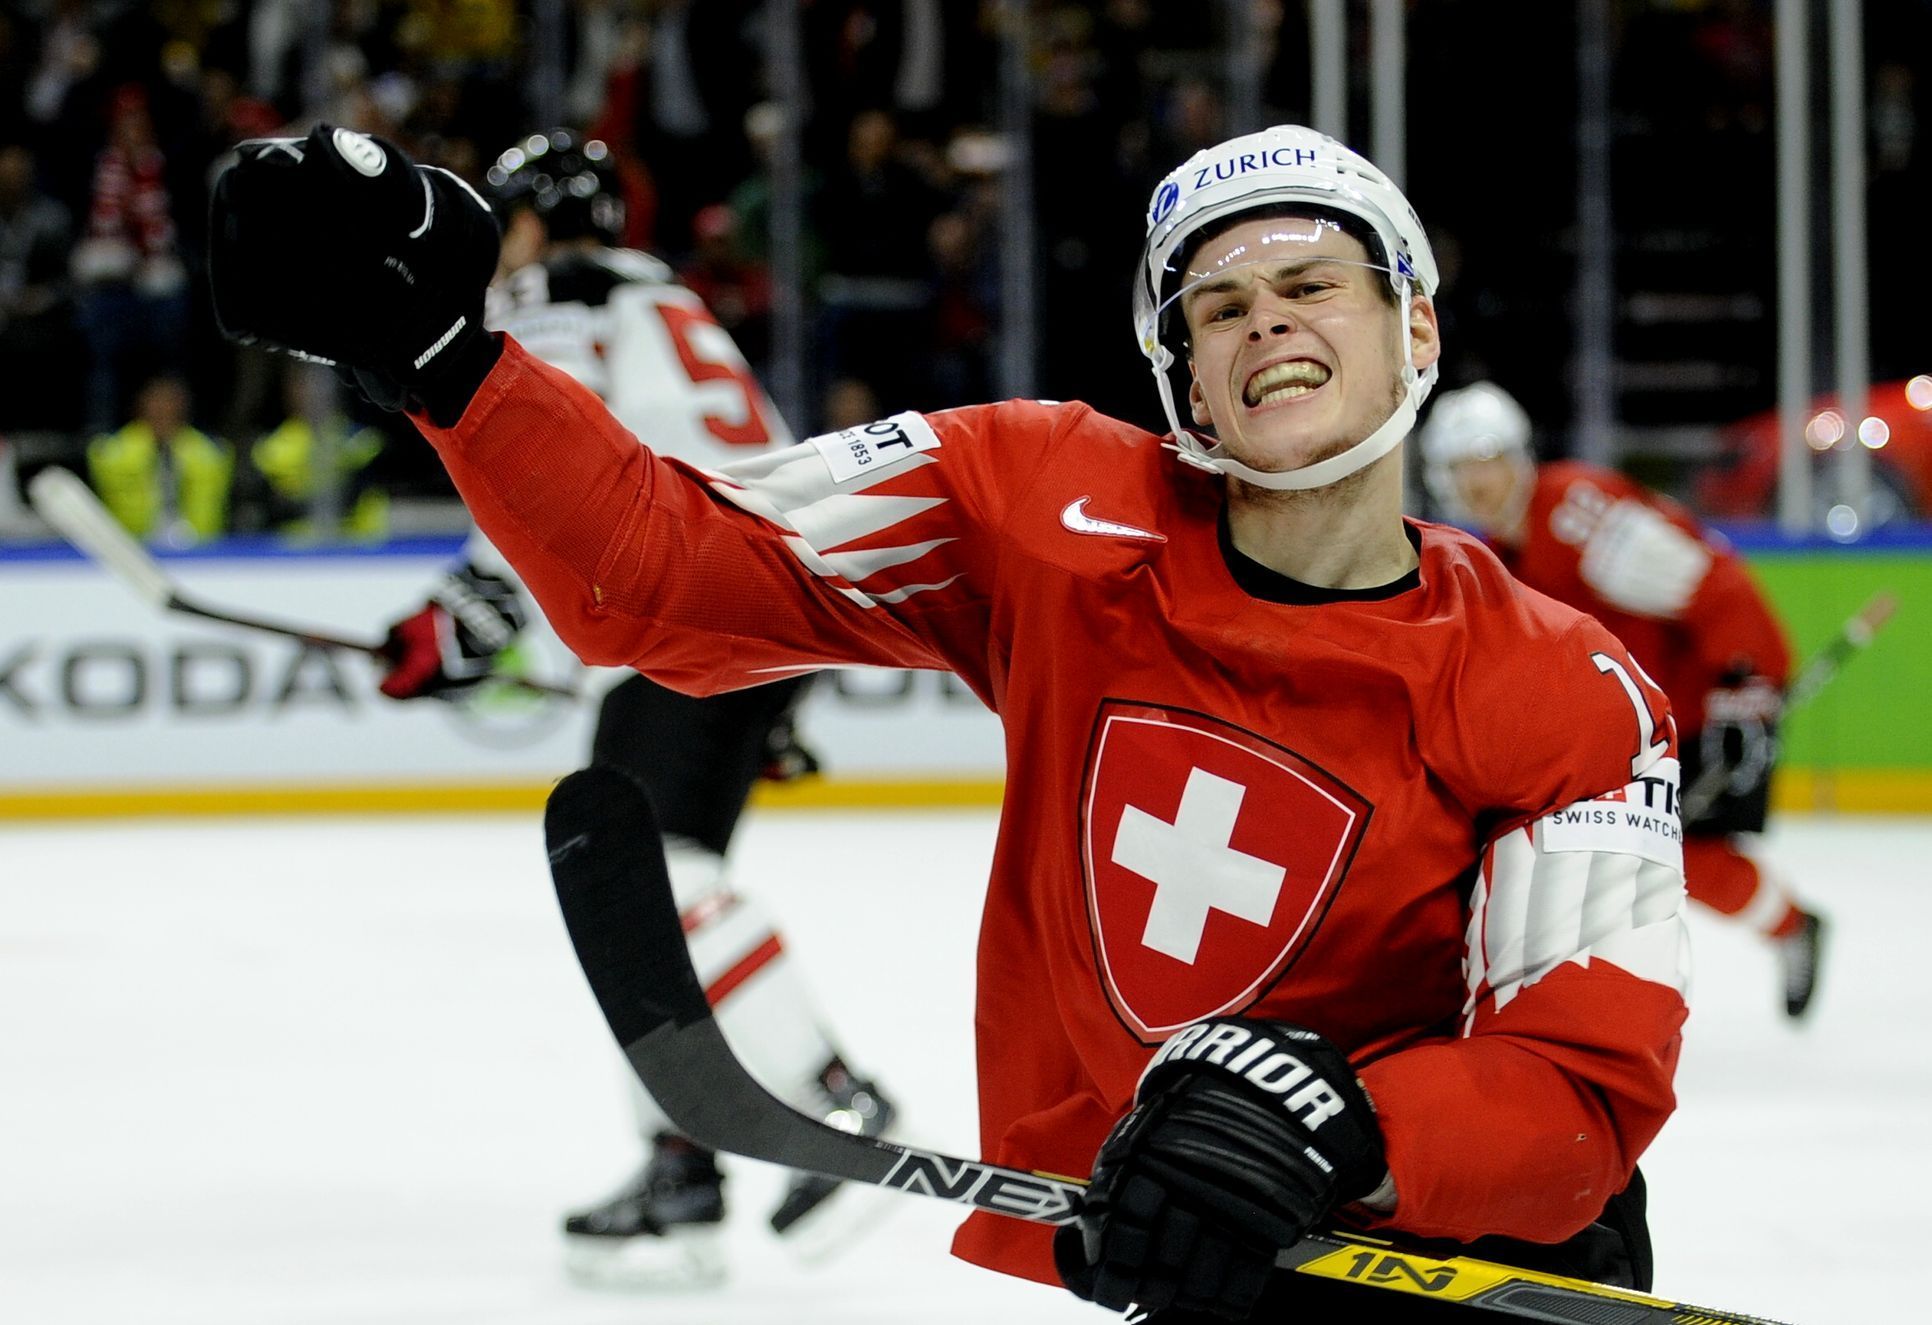 MS v hokeji: semifinále Kanada – Švýcarsko